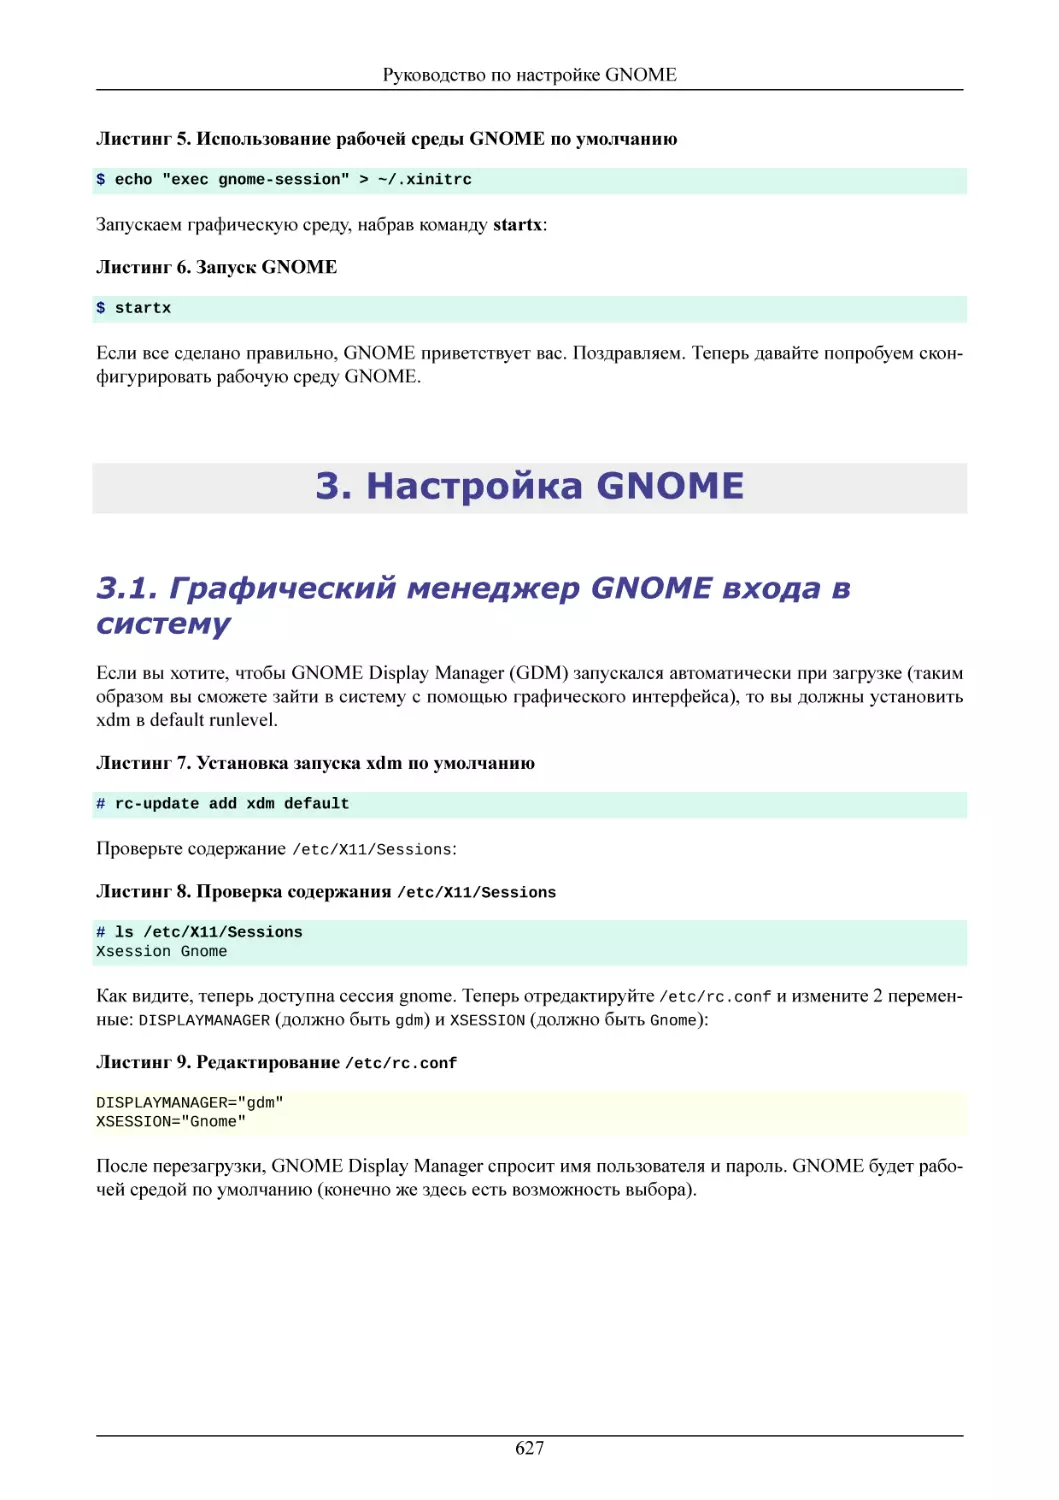 Настройка GNOME
Графический менеджер GNOME входа в систему